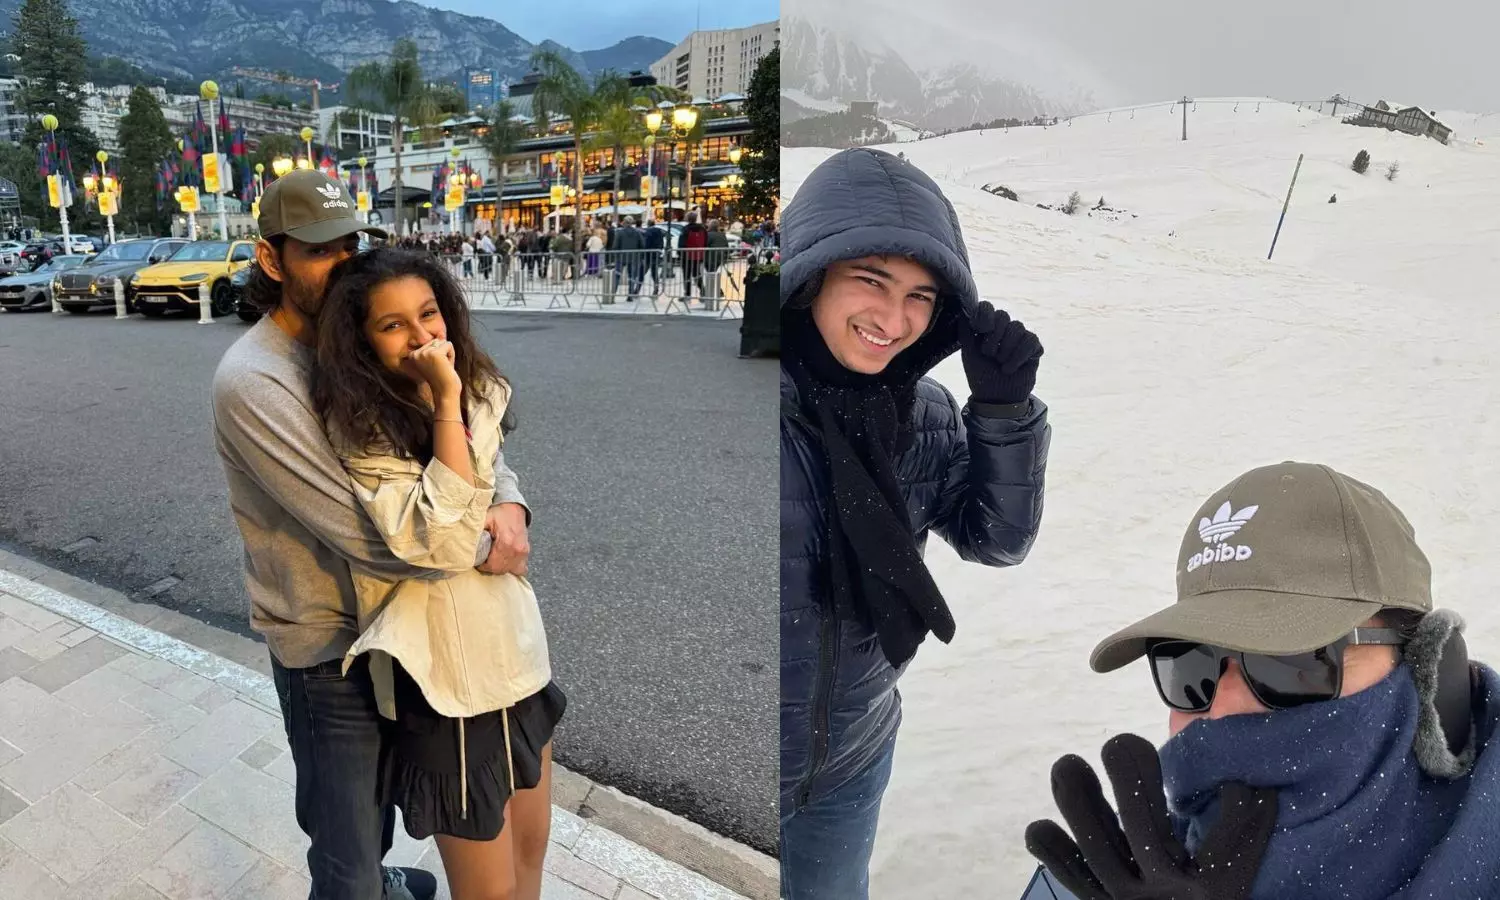 Pics: Mahesh Babu Shares Glimpse of European Vacation with Family